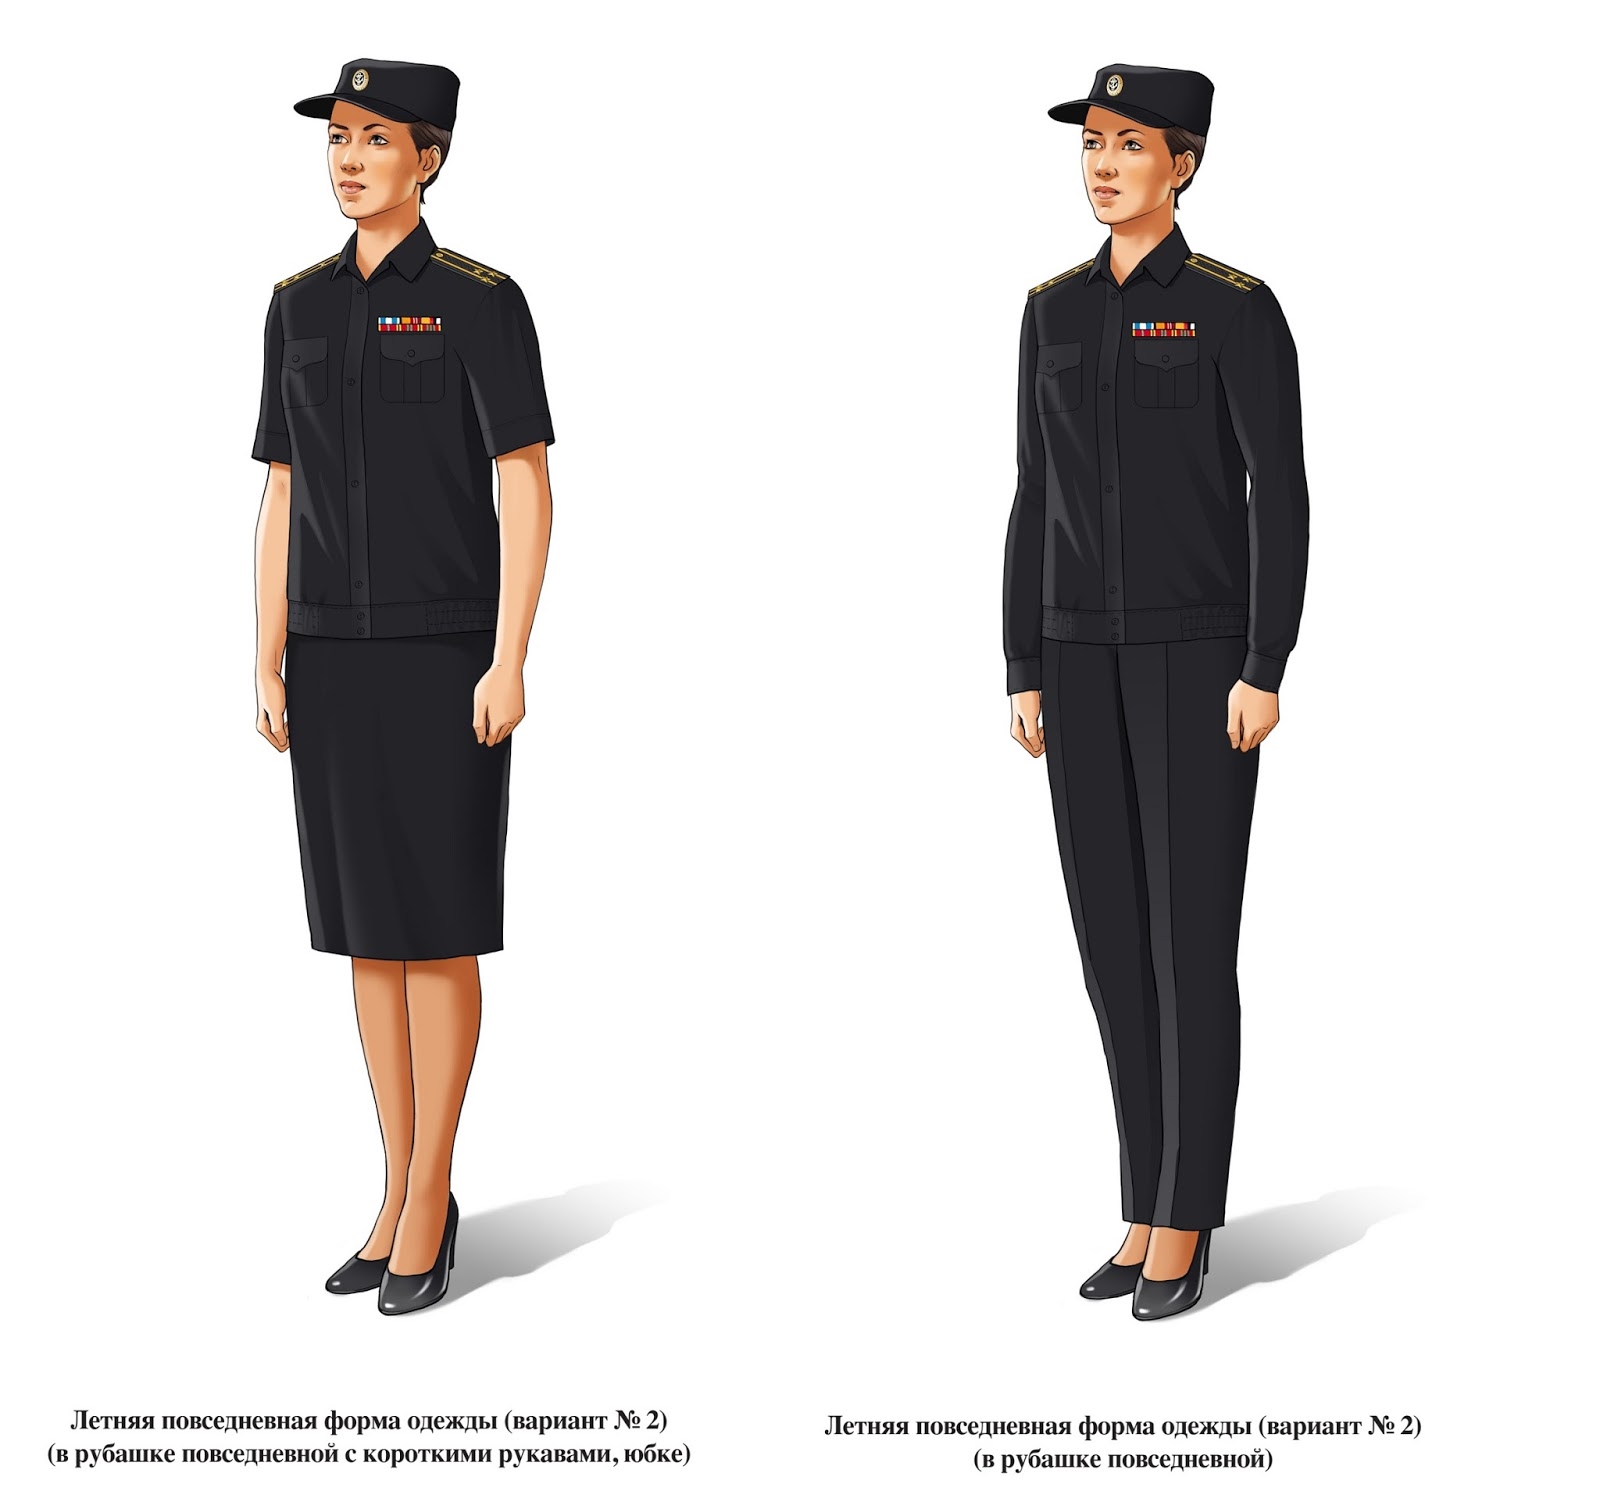 Повседневная форма купить. Офисная форма ФСИН женская. Форма одежды военнослужащих МО РФ 2020 офисная. Офисная форма одежды военнослужащих ВМФ. Офисная форма женская ВМФ 2022.